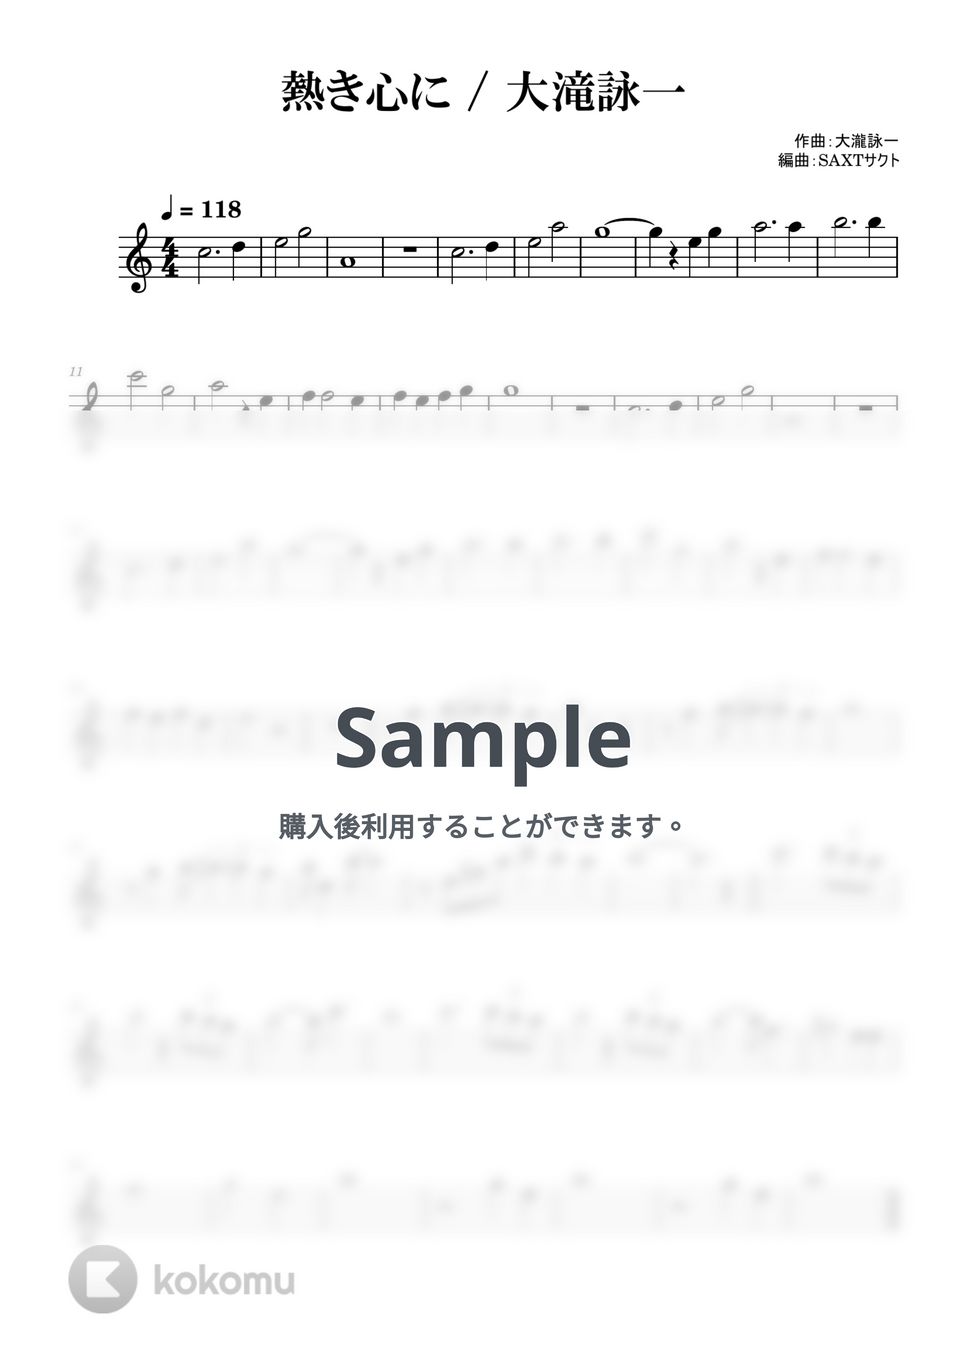 大滝詠一 - 熱き心に (めちゃラク譜) by SAXT